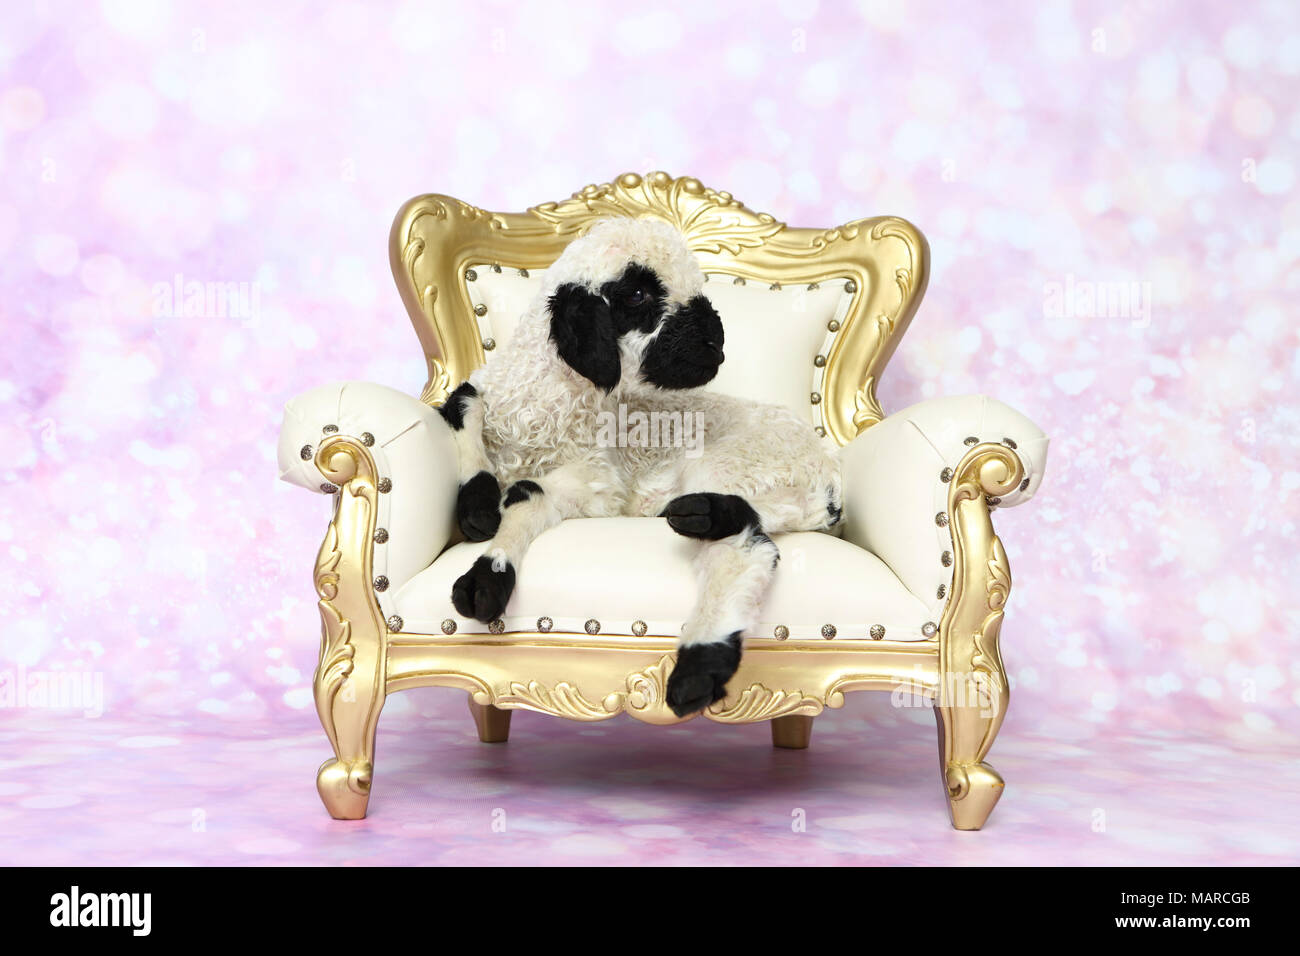 Le Valais les moutons. L'agneau (5 jours) allongé sur un fauteuil baroque. Studio photo sur un fond rose. Allemagne Banque D'Images